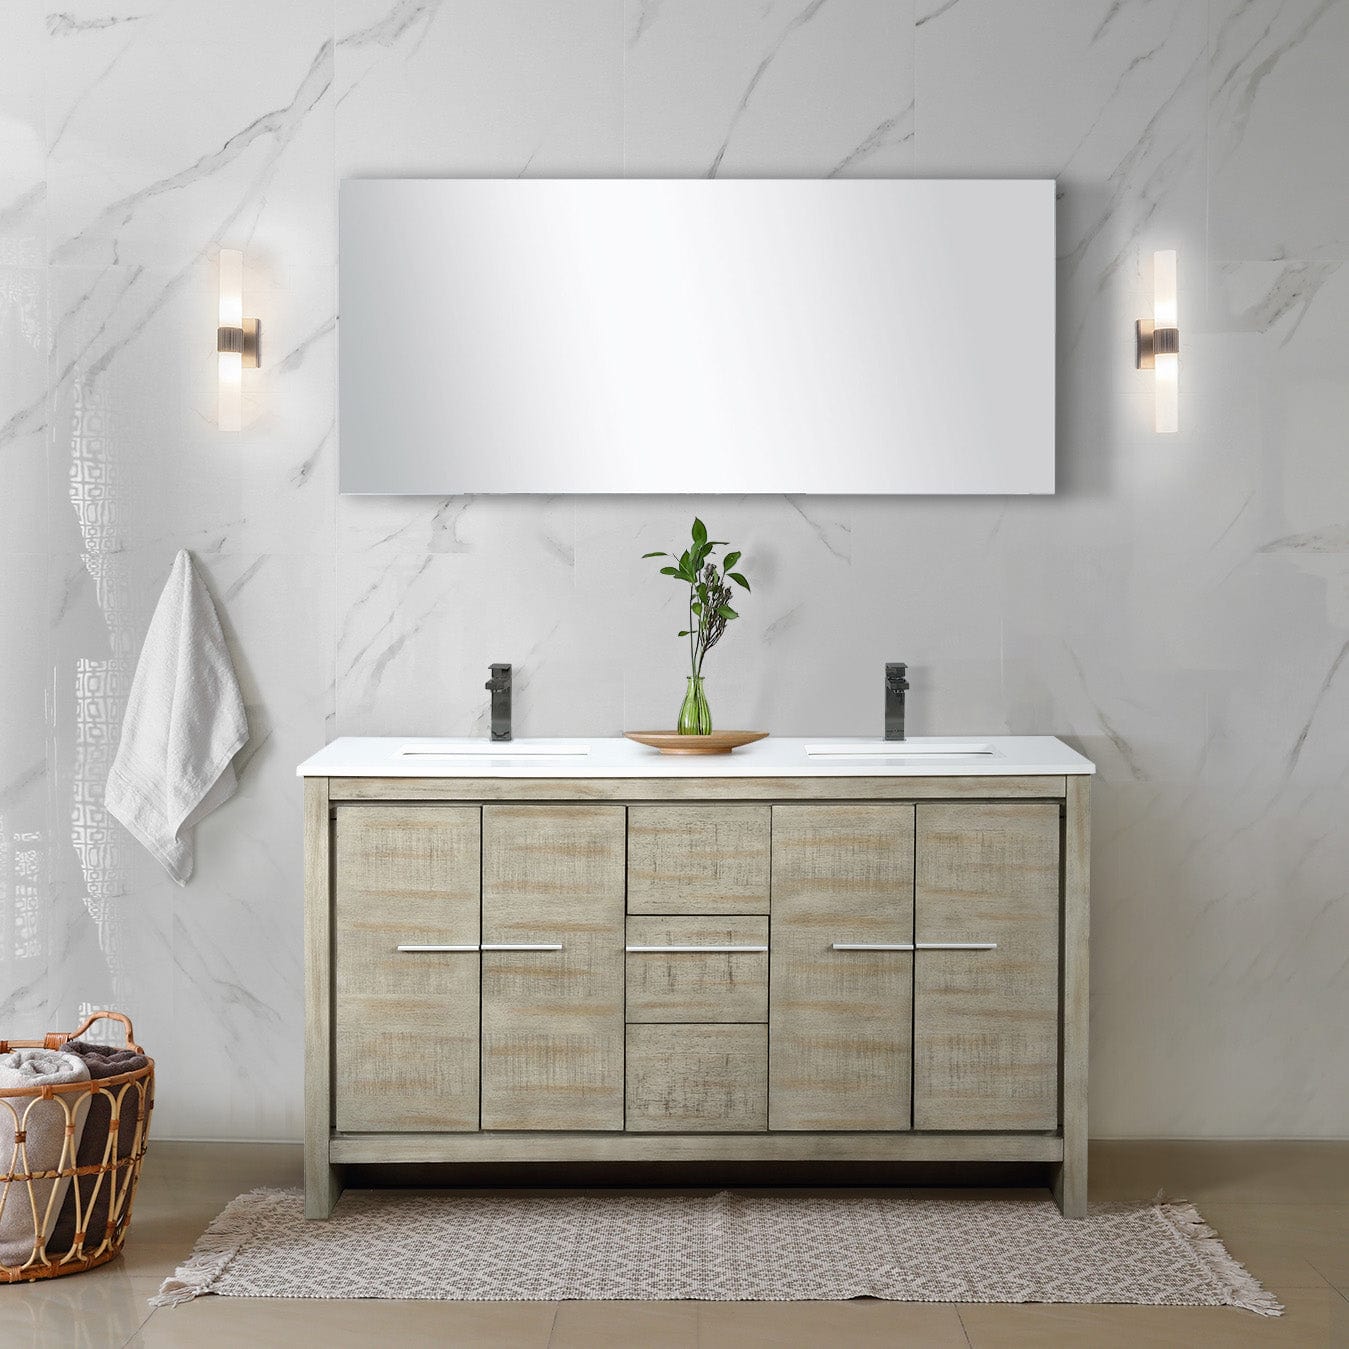 Lexora Bathroom Vanity Cultured Marble / Gun Metal Faucet / No Mirror Lafarre 60" Rustic Acacia Double Bathroom Vanity